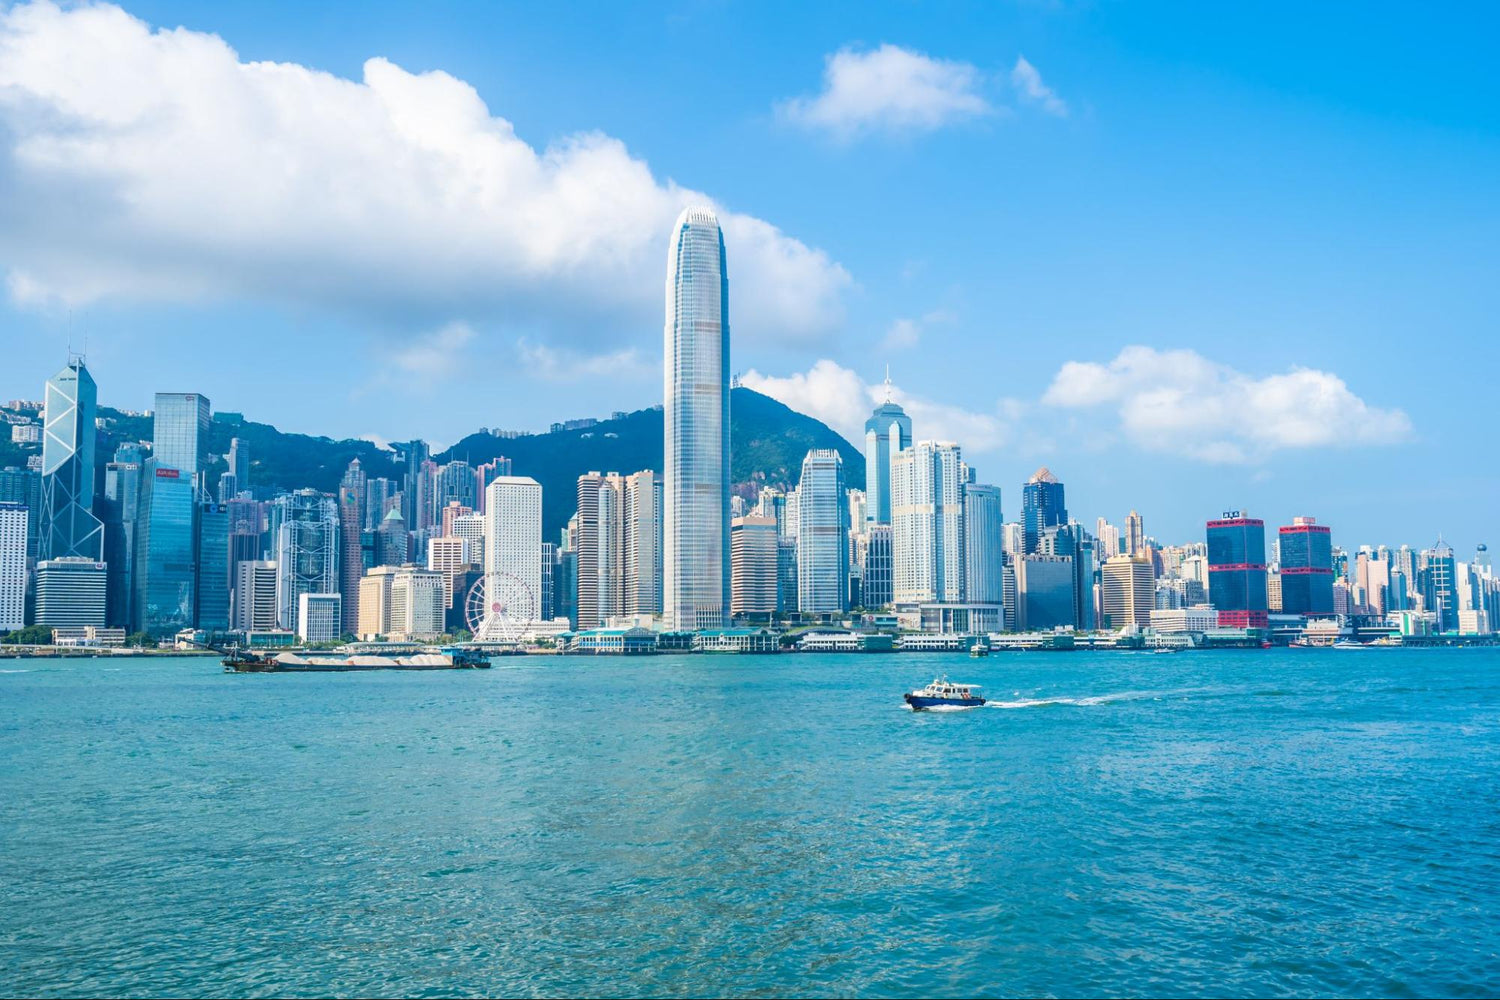 RUTA DE HONG KONG : CULTURA Y GASTRONOMÍA, RESACA DEL AÑO NUEVO LUNAR